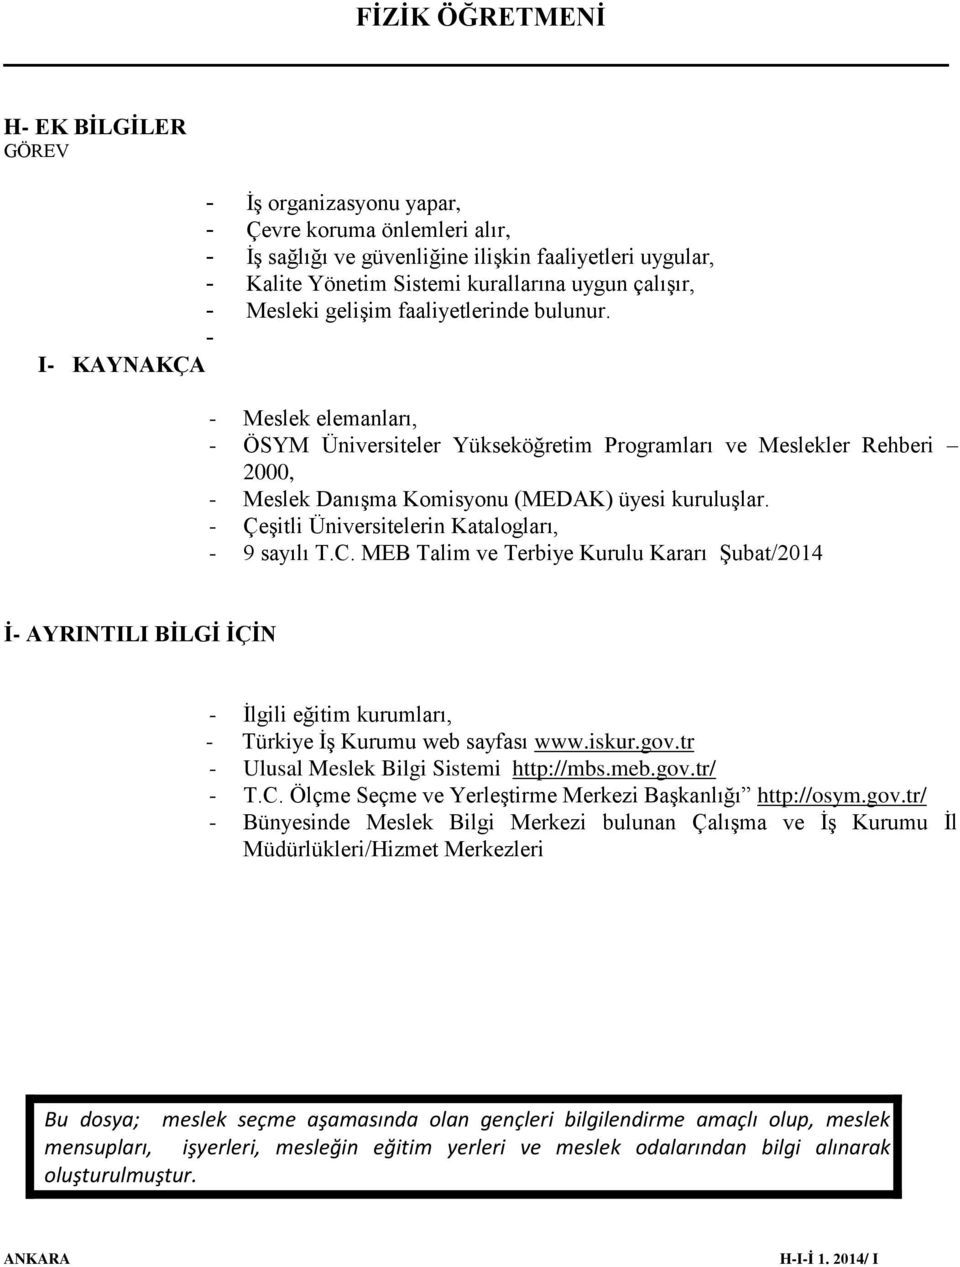 - Çeşitli Üniversitelerin Katalogları, - 9 sayılı T.C. MEB Talim ve Terbiye Kurulu Kararı Şubat/2014 İ- AYRINTILI BİLGİ İÇİN - İlgili eğitim kurumları, - Türkiye İş Kurumu web sayfası www.iskur.gov.